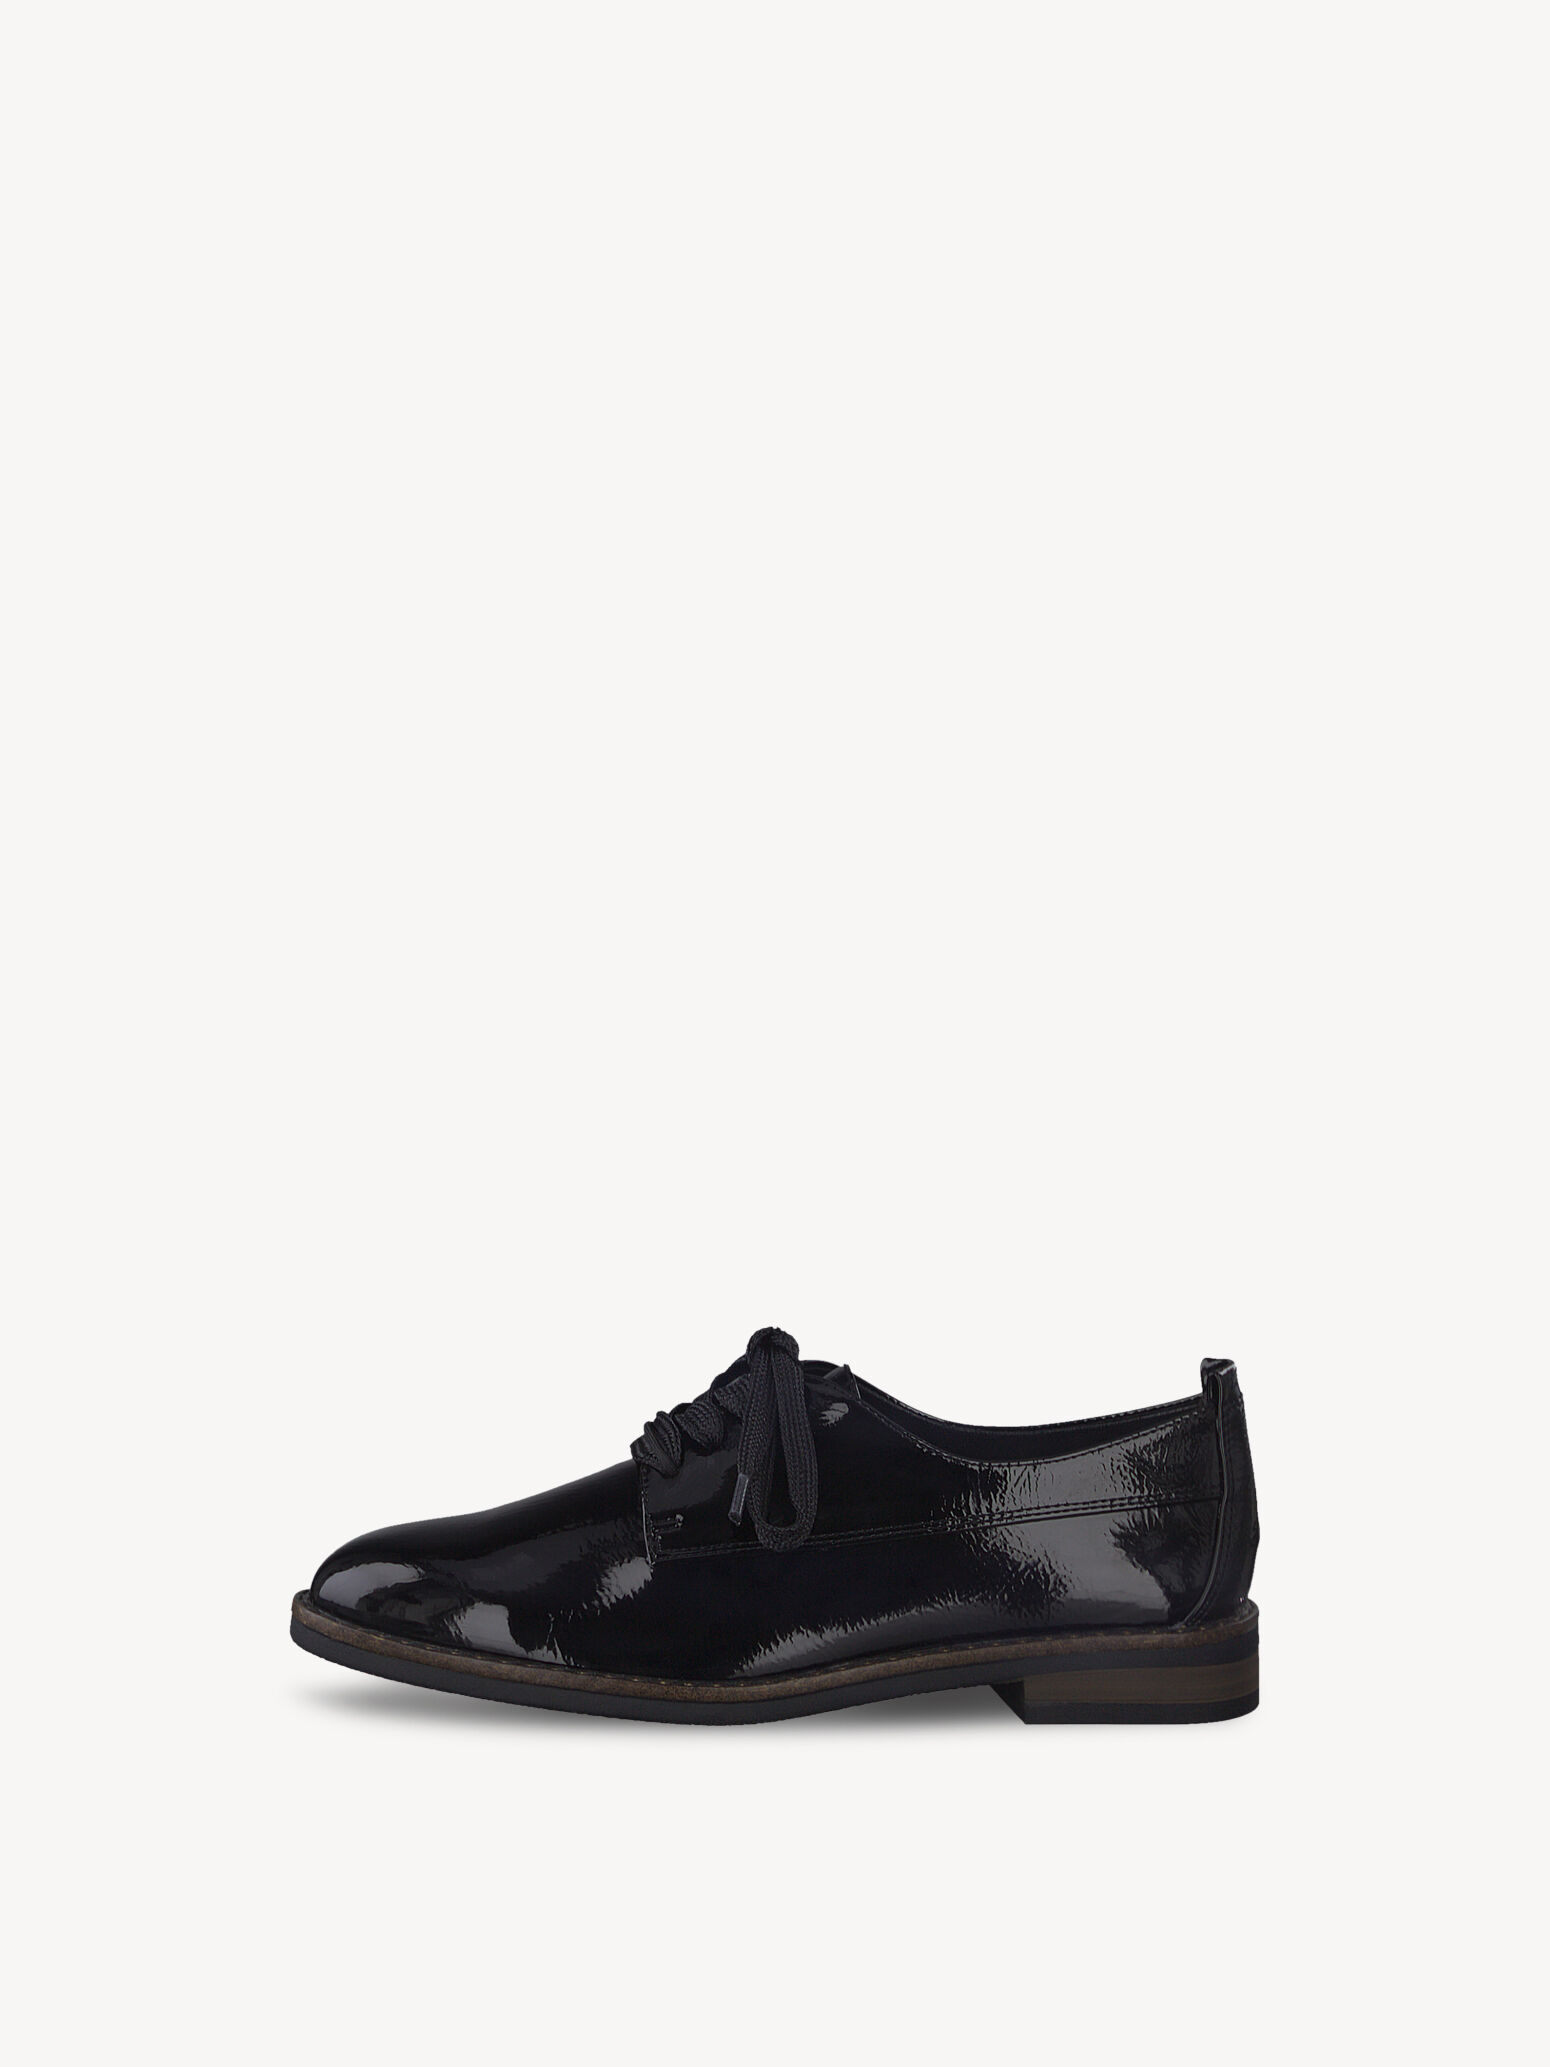 Schoenen Lage schoenen Veterschoenen Armani Jeans Veterschoenen zwart elegant 